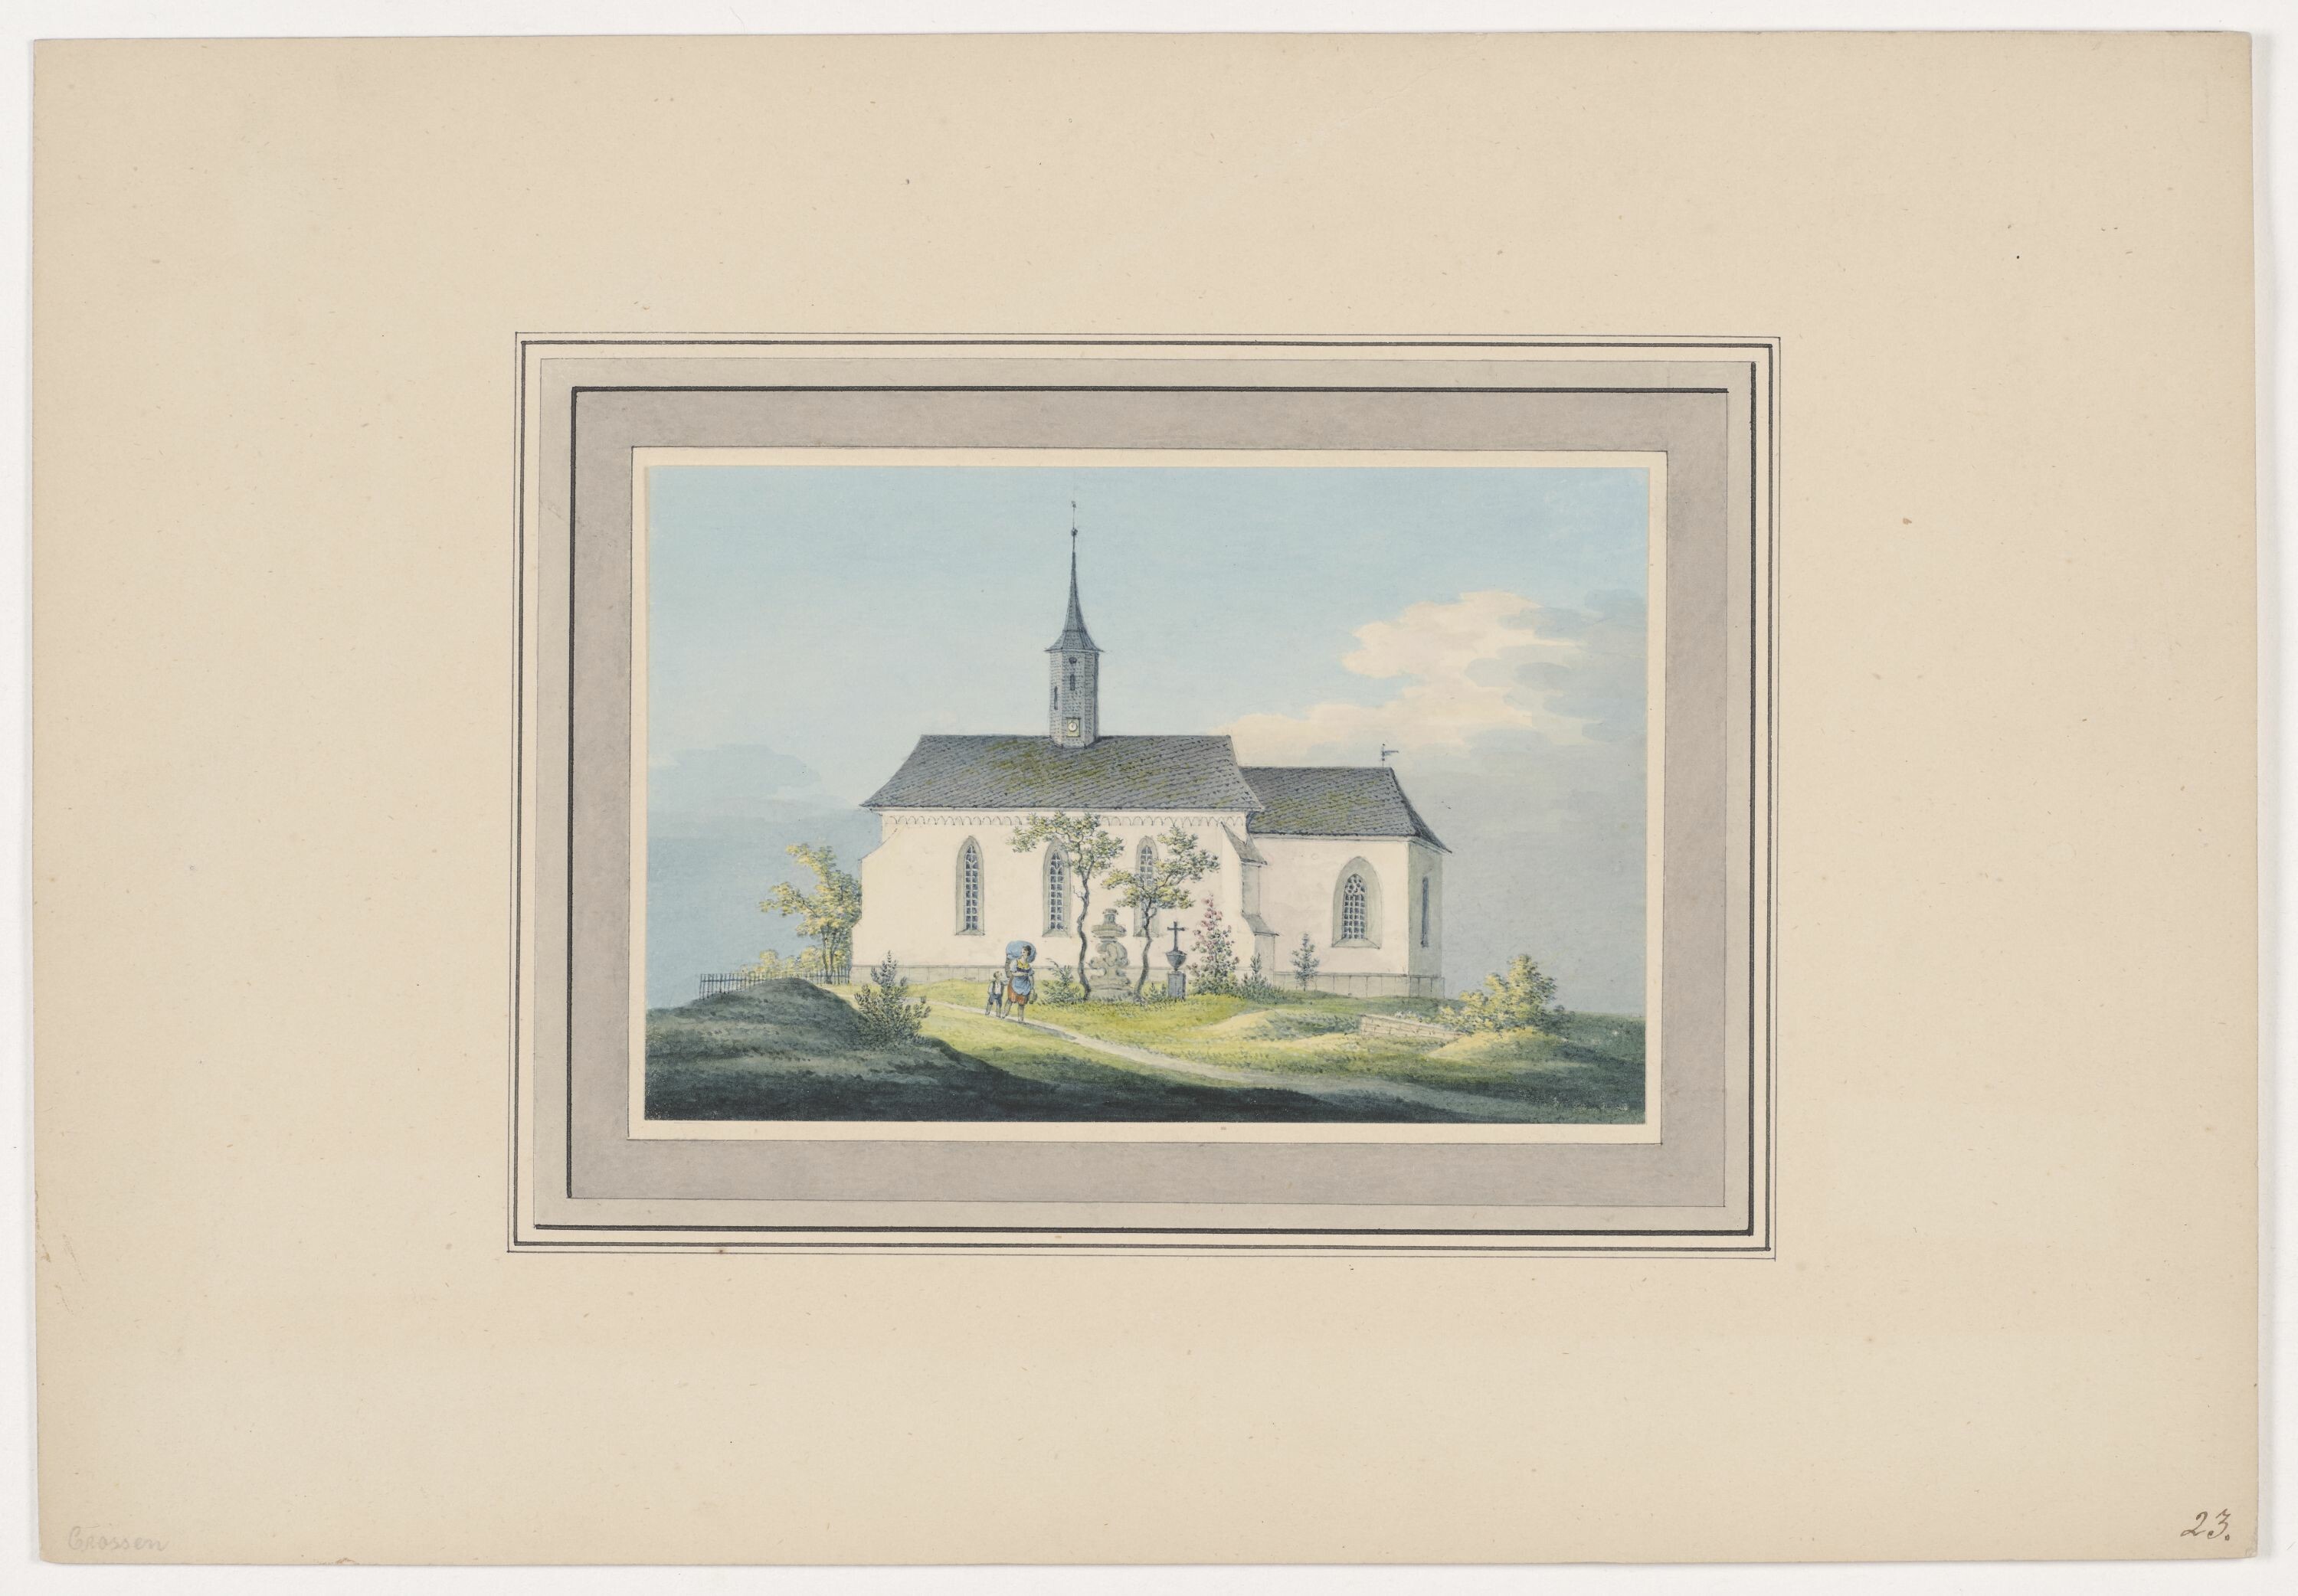 Kirche zu Crossen, aus Mappe: Dorfkirchen der Ephorie Zwickau, Blatt 23 (KUNSTSAMMLUNGEN ZWICKAU Max-Pechstein-Museum RR-F)